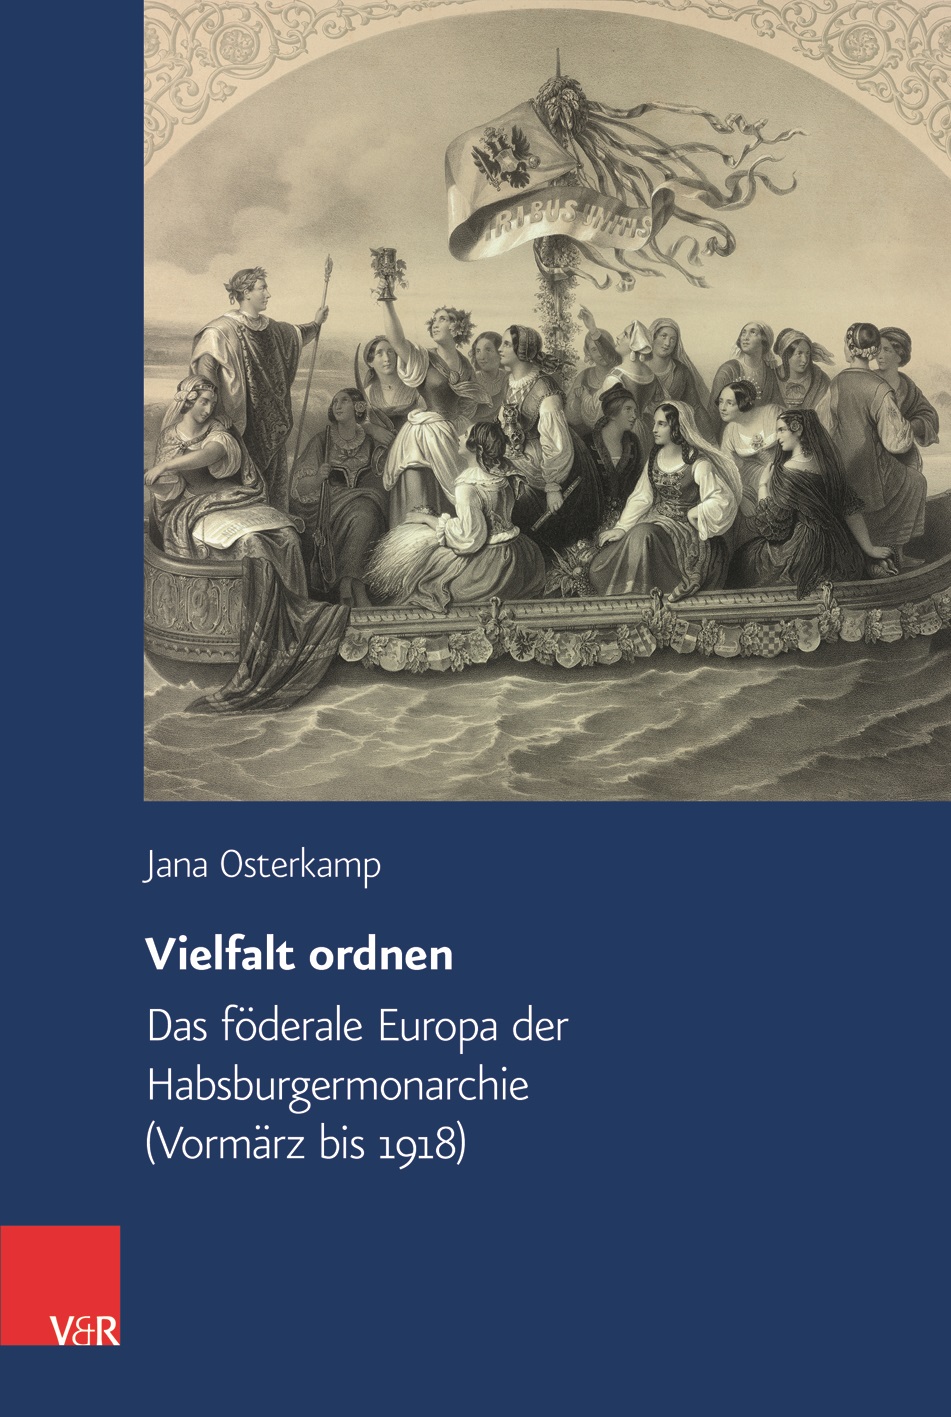 Titelbild von: Jana Osterkamp, "Vielfallt ordnen, das föderale Europa der Habsburgermonarchie (Vormärz bis 1918)